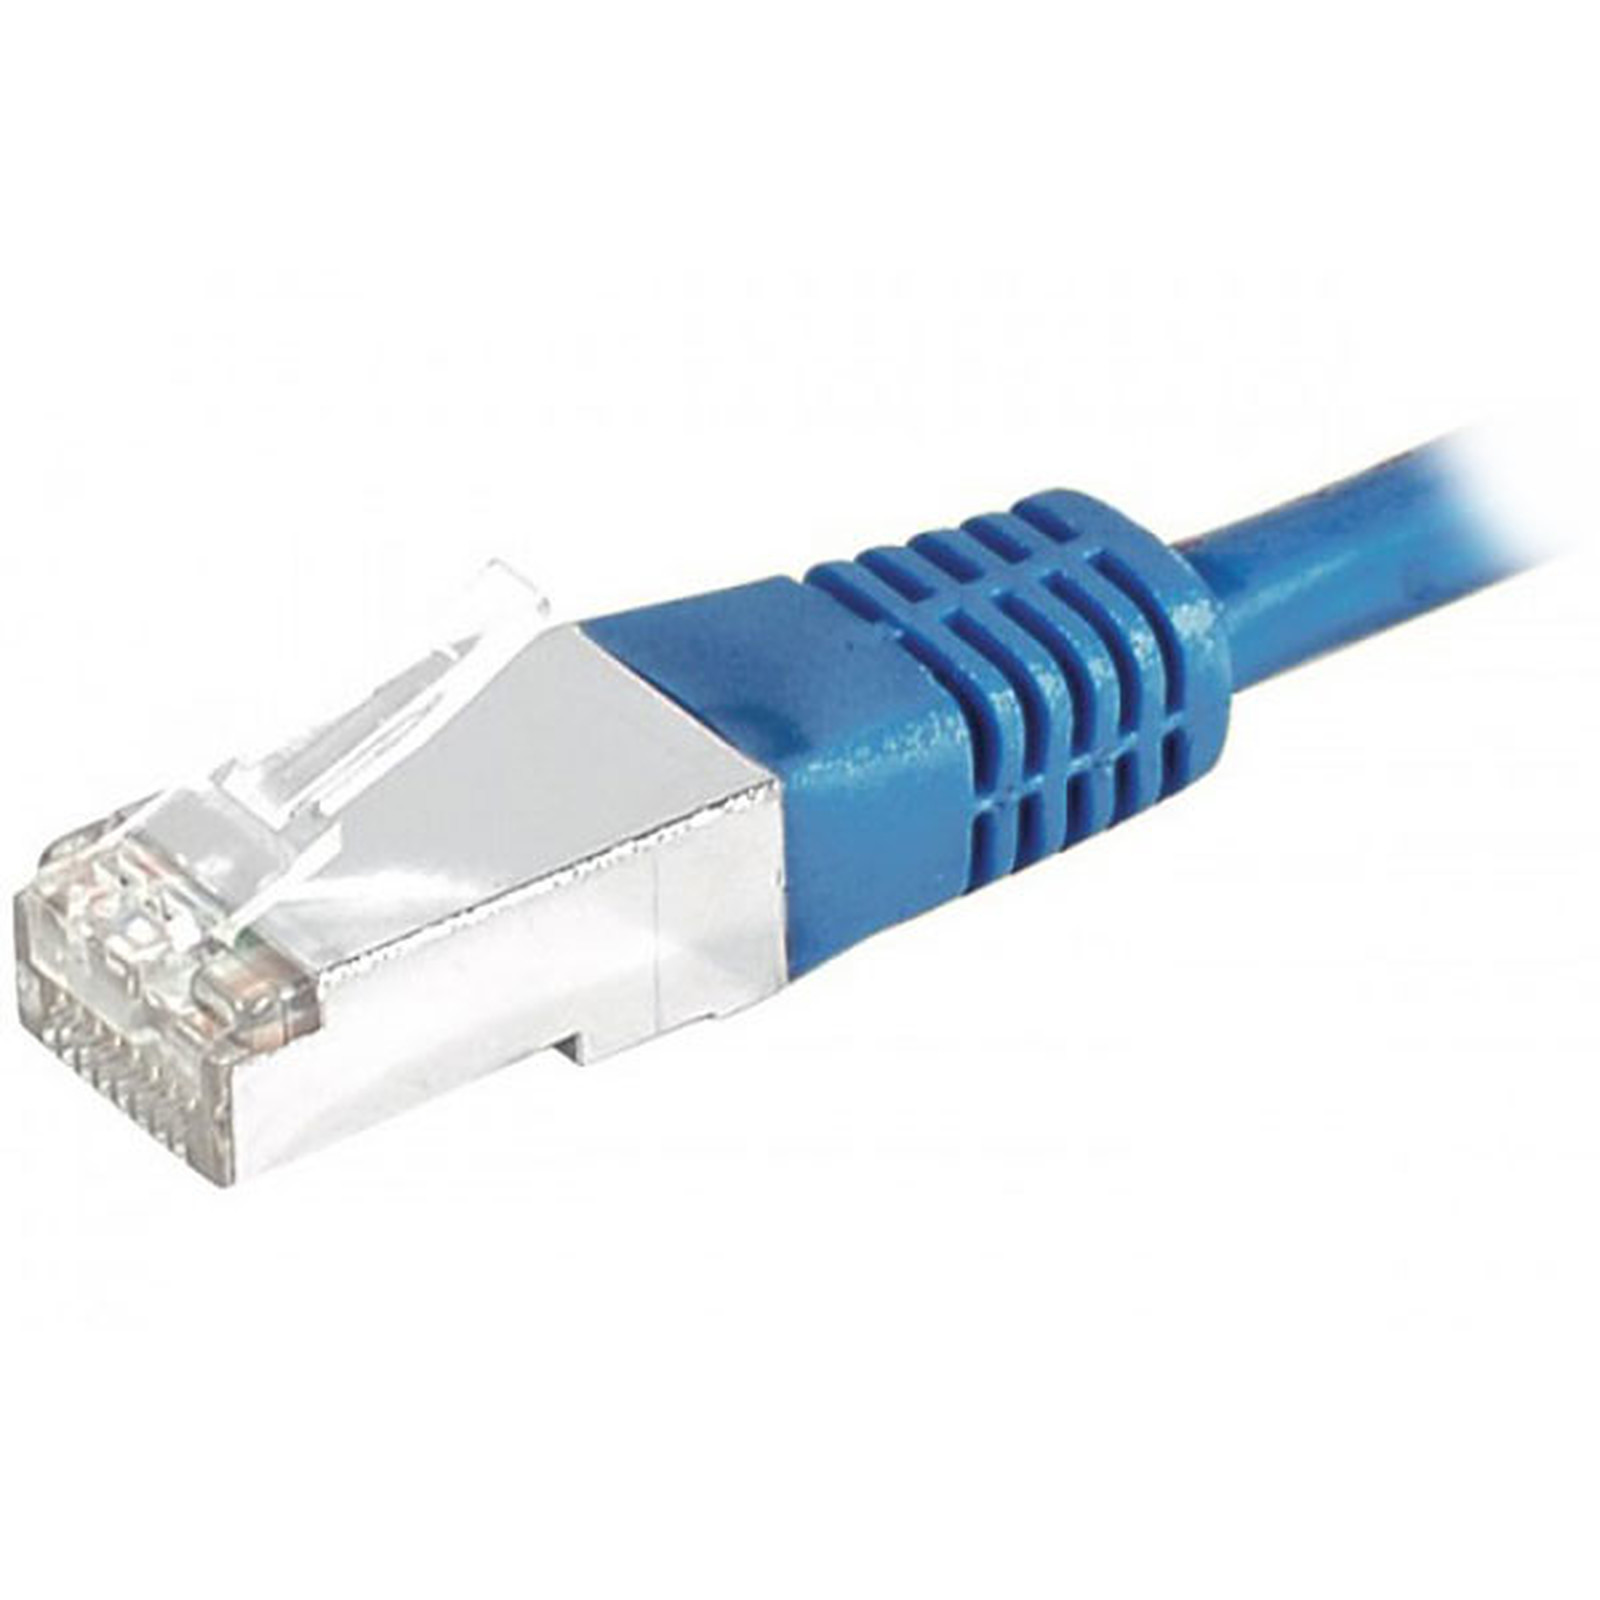 Cable RJ45 categorie 6 S/FTP 5 m (Bleu) - Cable RJ45 Generique